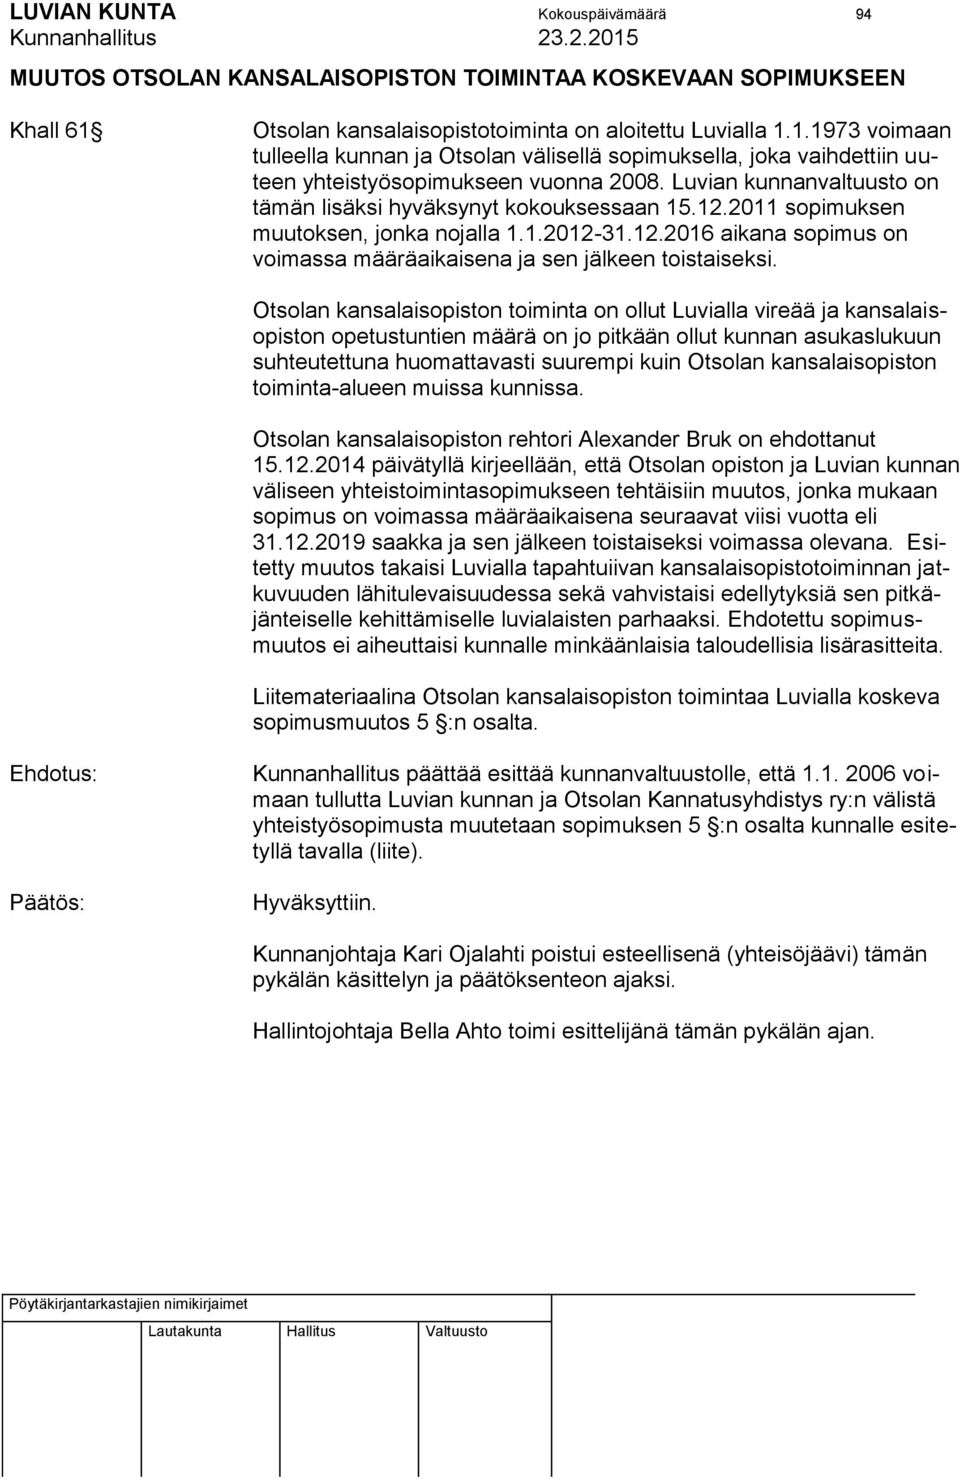 Luvian kunnanvaltuusto on tämän lisäksi hyväksynyt kokouksessaan 15.12.2011 sopimuksen muutoksen, jonka nojalla 1.1.2012-31.12.2016 aikana sopimus on voimassa määräaikaisena ja sen jälkeen toistaiseksi.